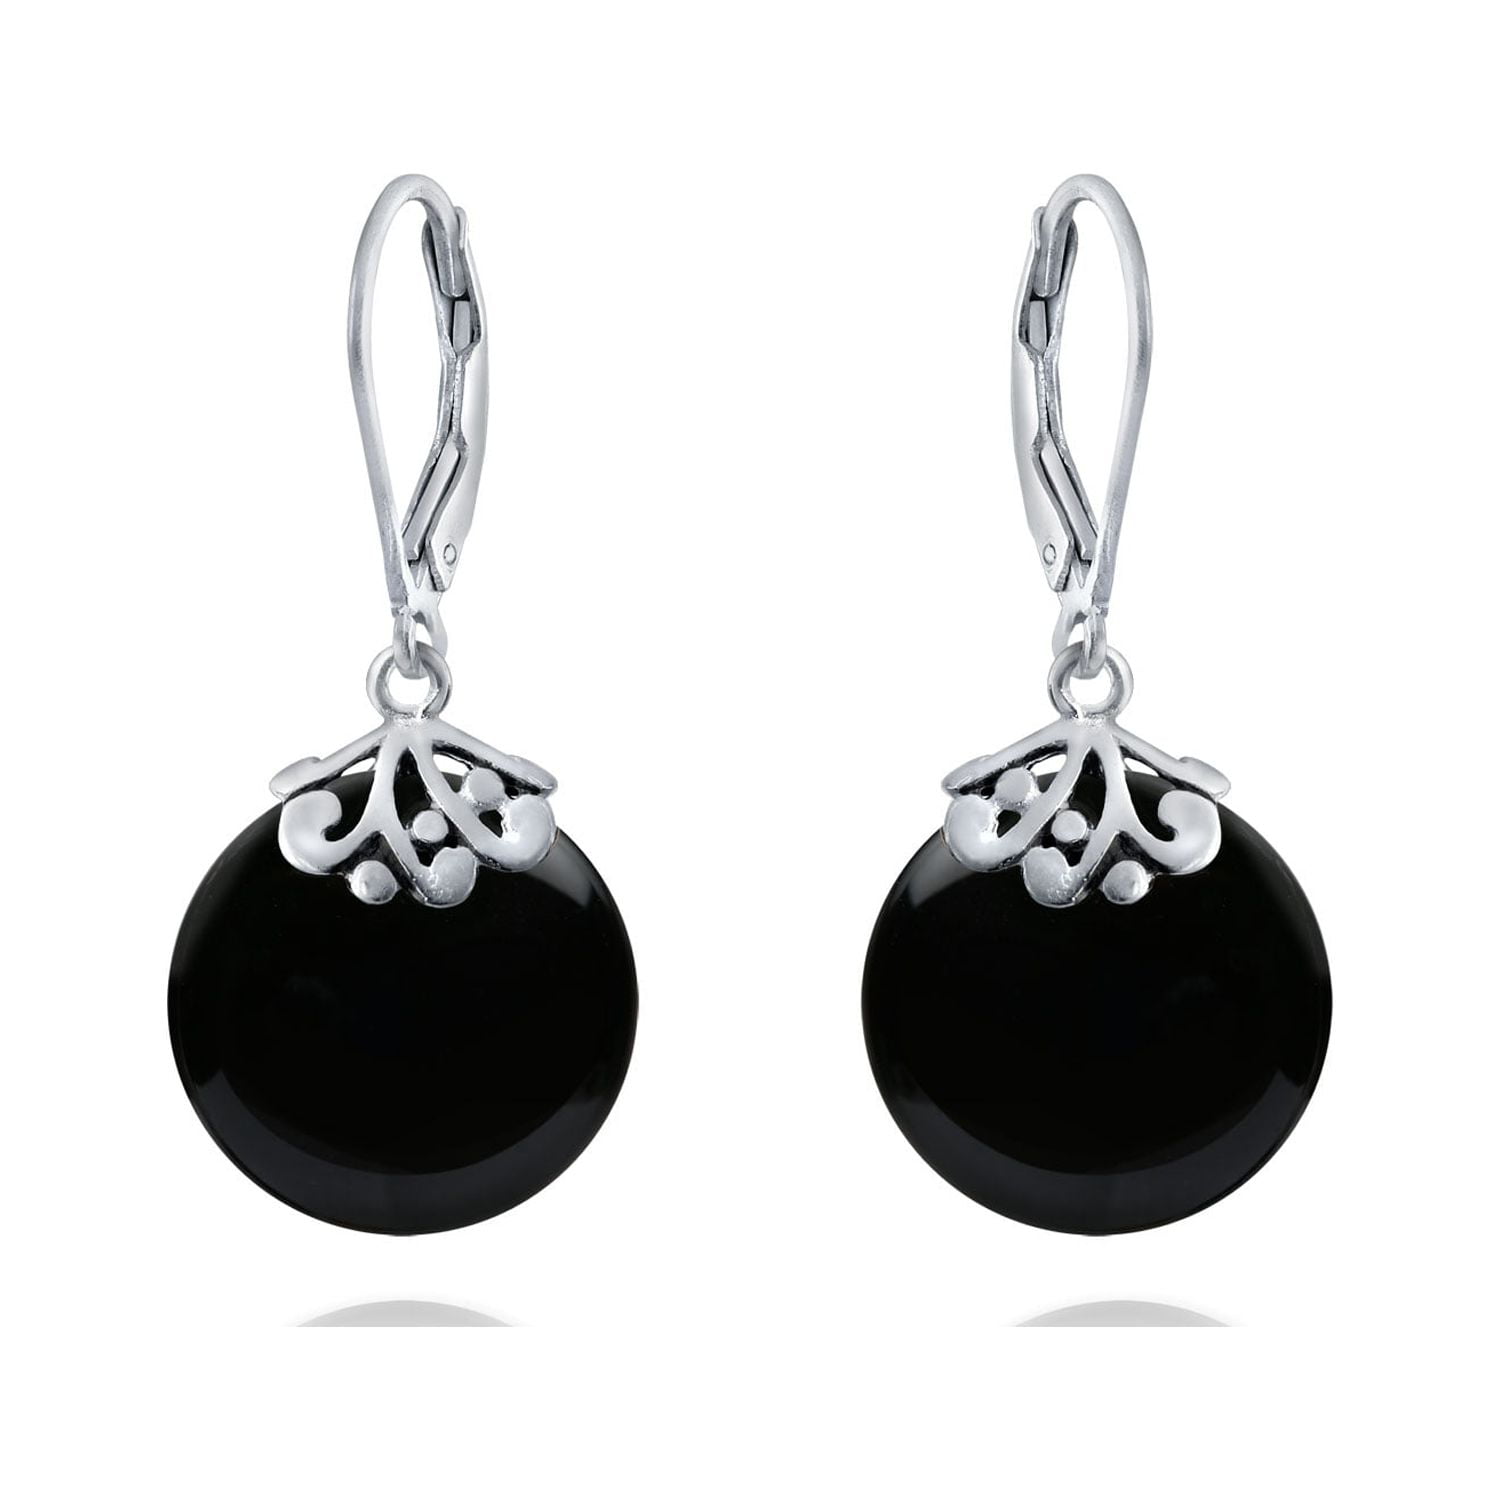 Buy Black Earrings for Women by ZAVERI PEARLS Online | Ajio.com